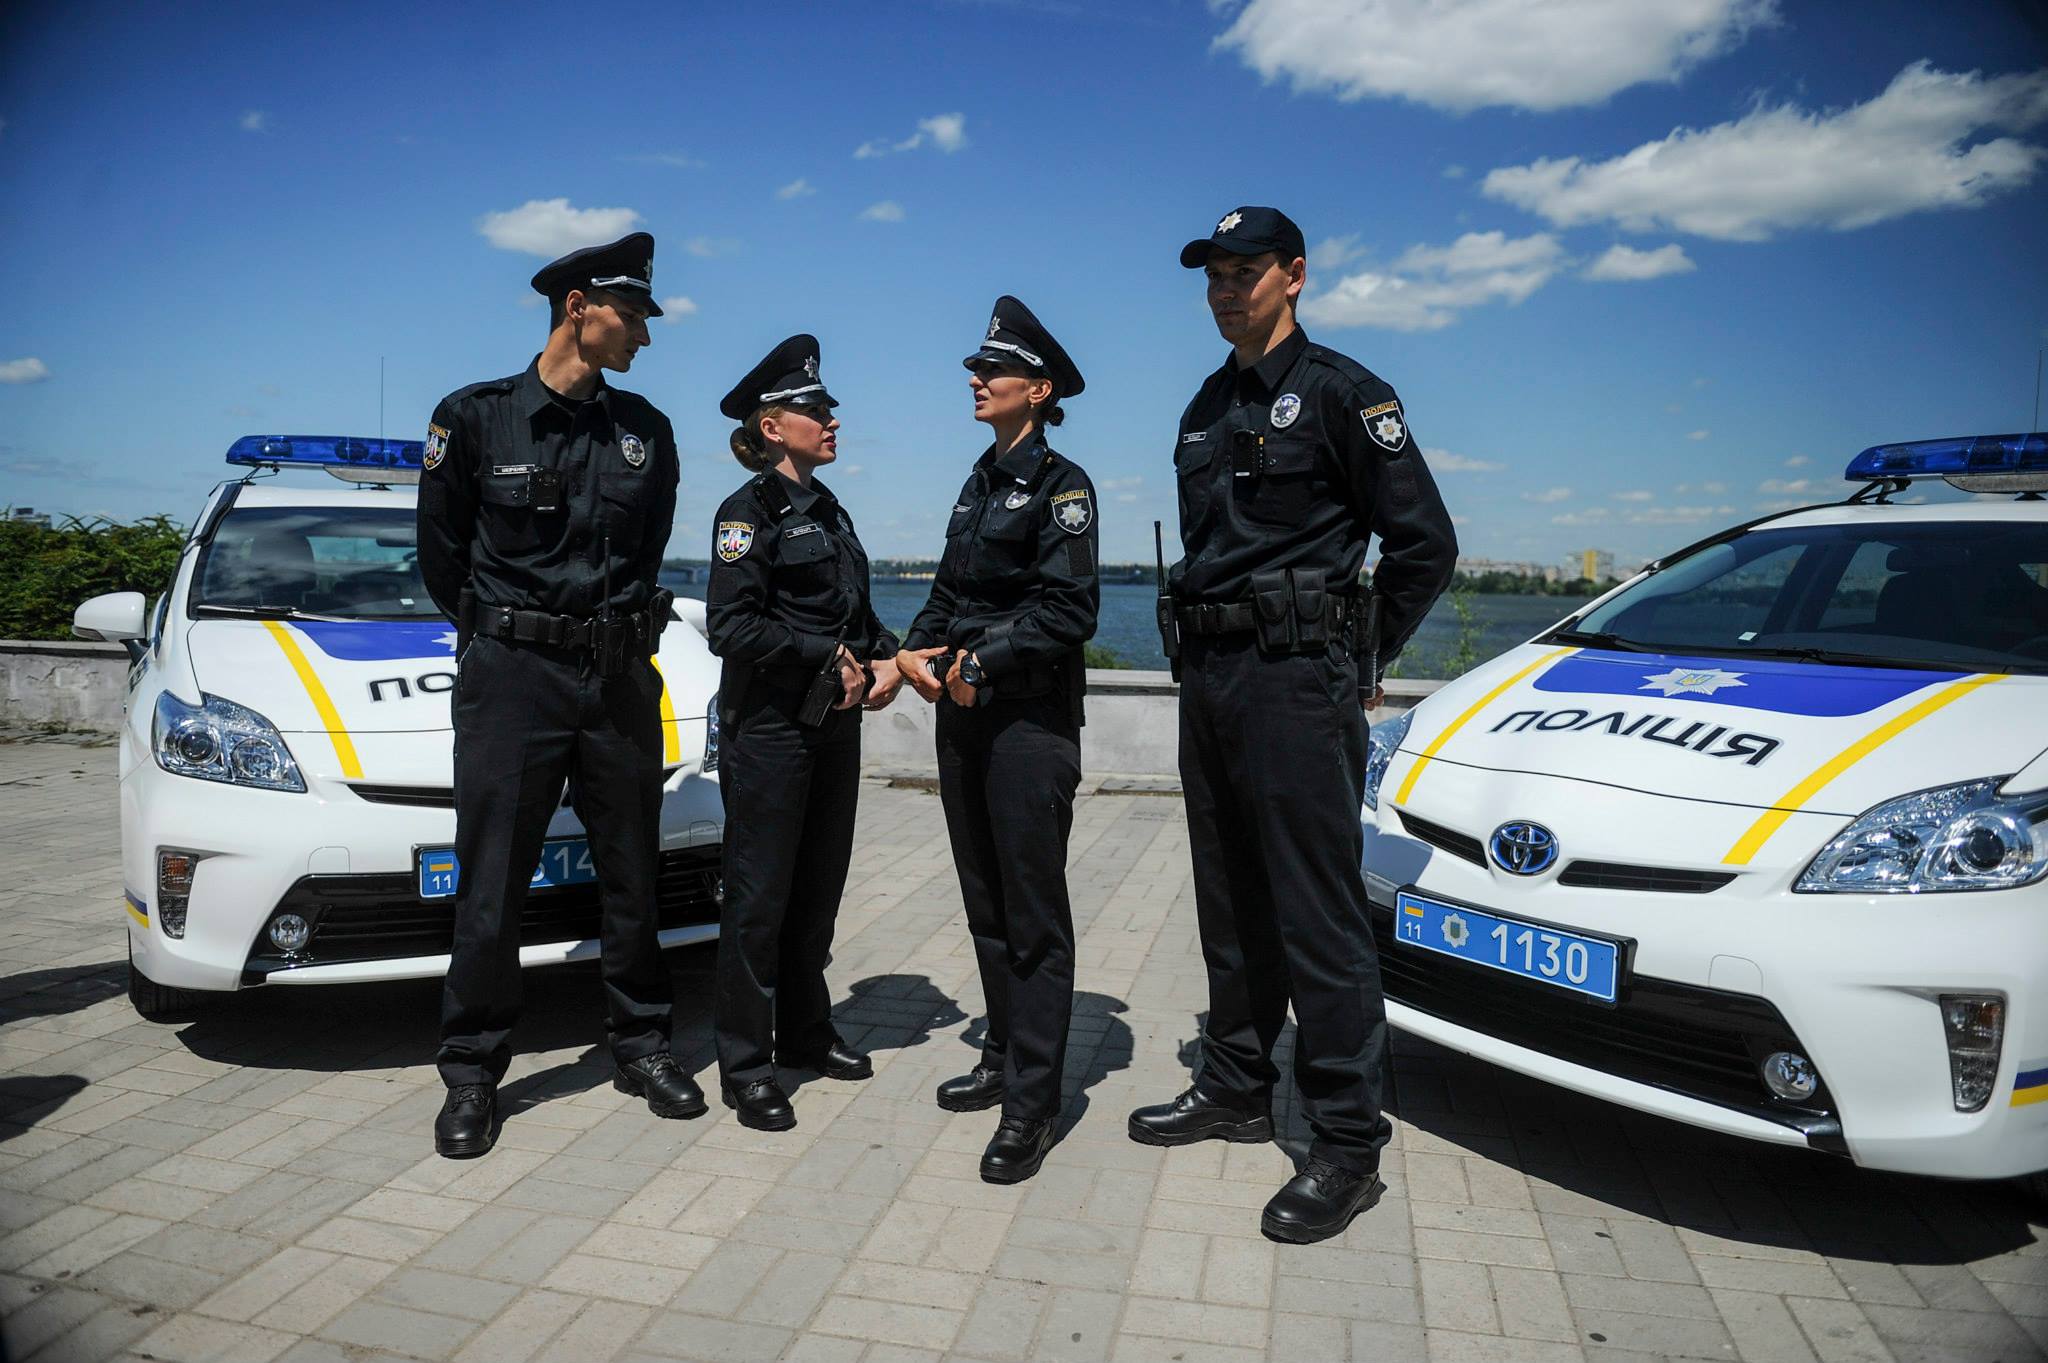 Видео а 4 полицейский. Национальная полиция Украины. Новая полиция Украины. Патрульная полиция. Форма полиции Украины.